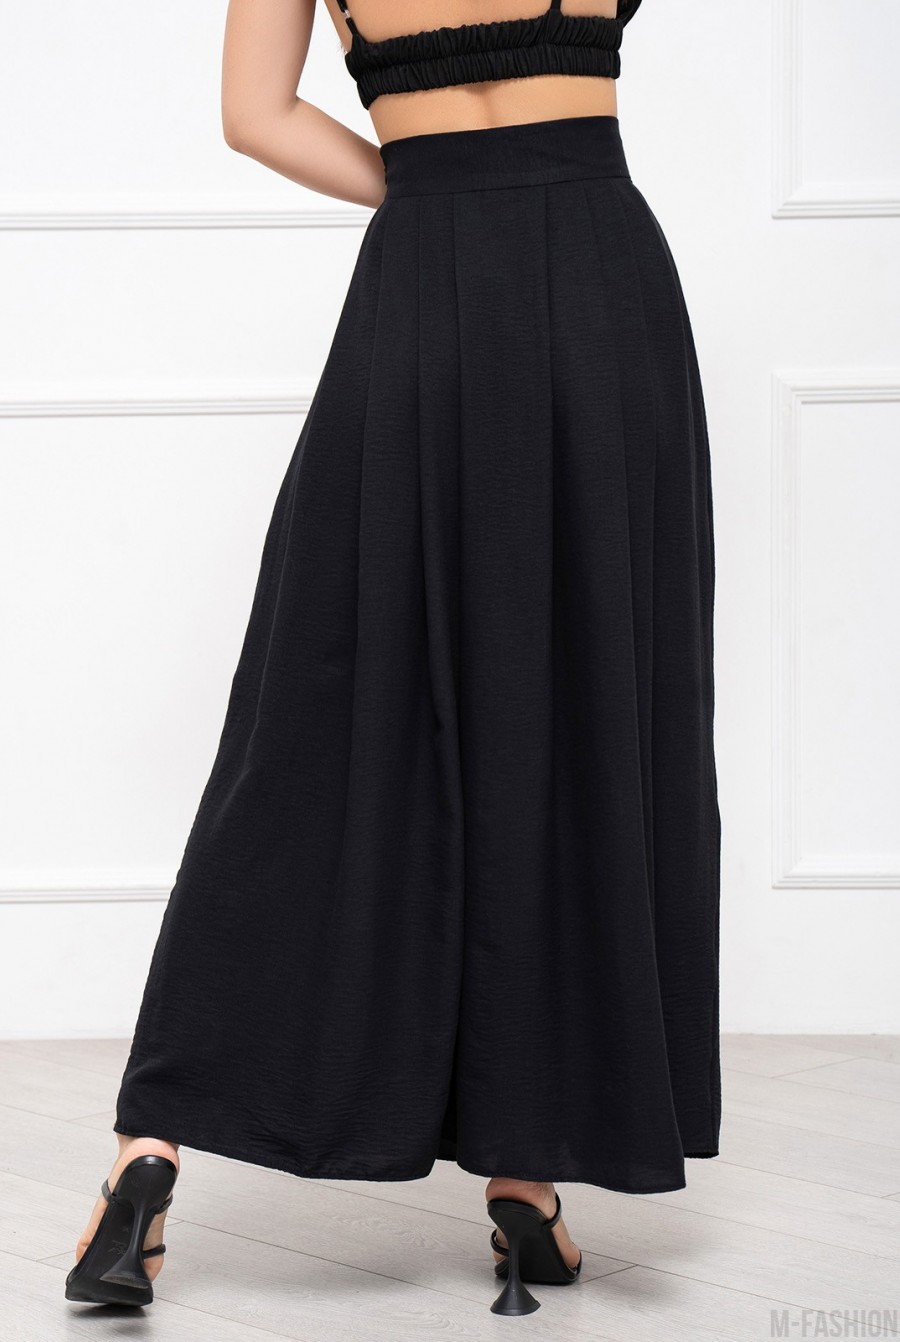 Черная текстурированная юбка со сборками - Фото 3